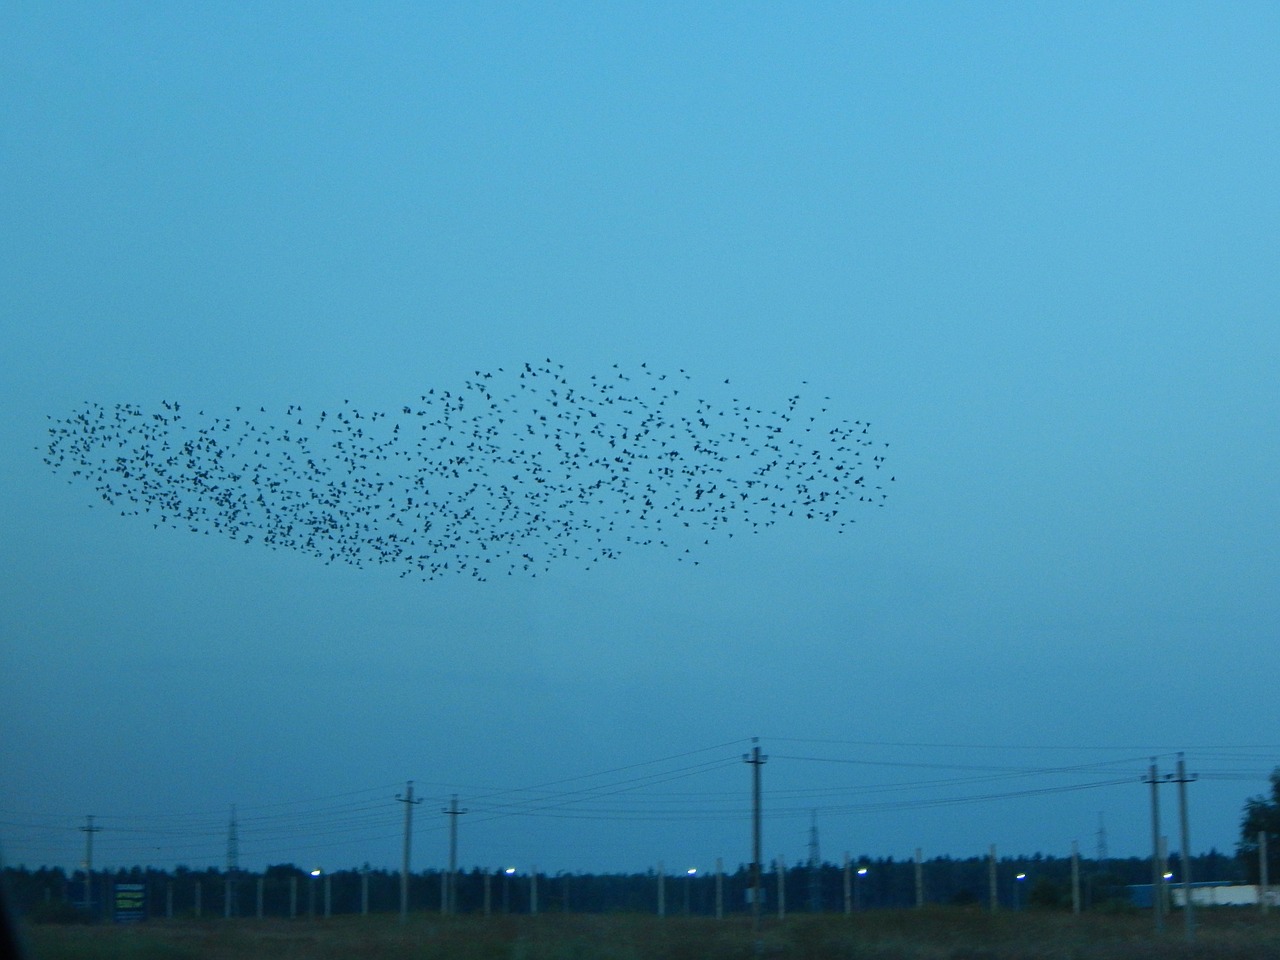 Flock of Birds Over Field